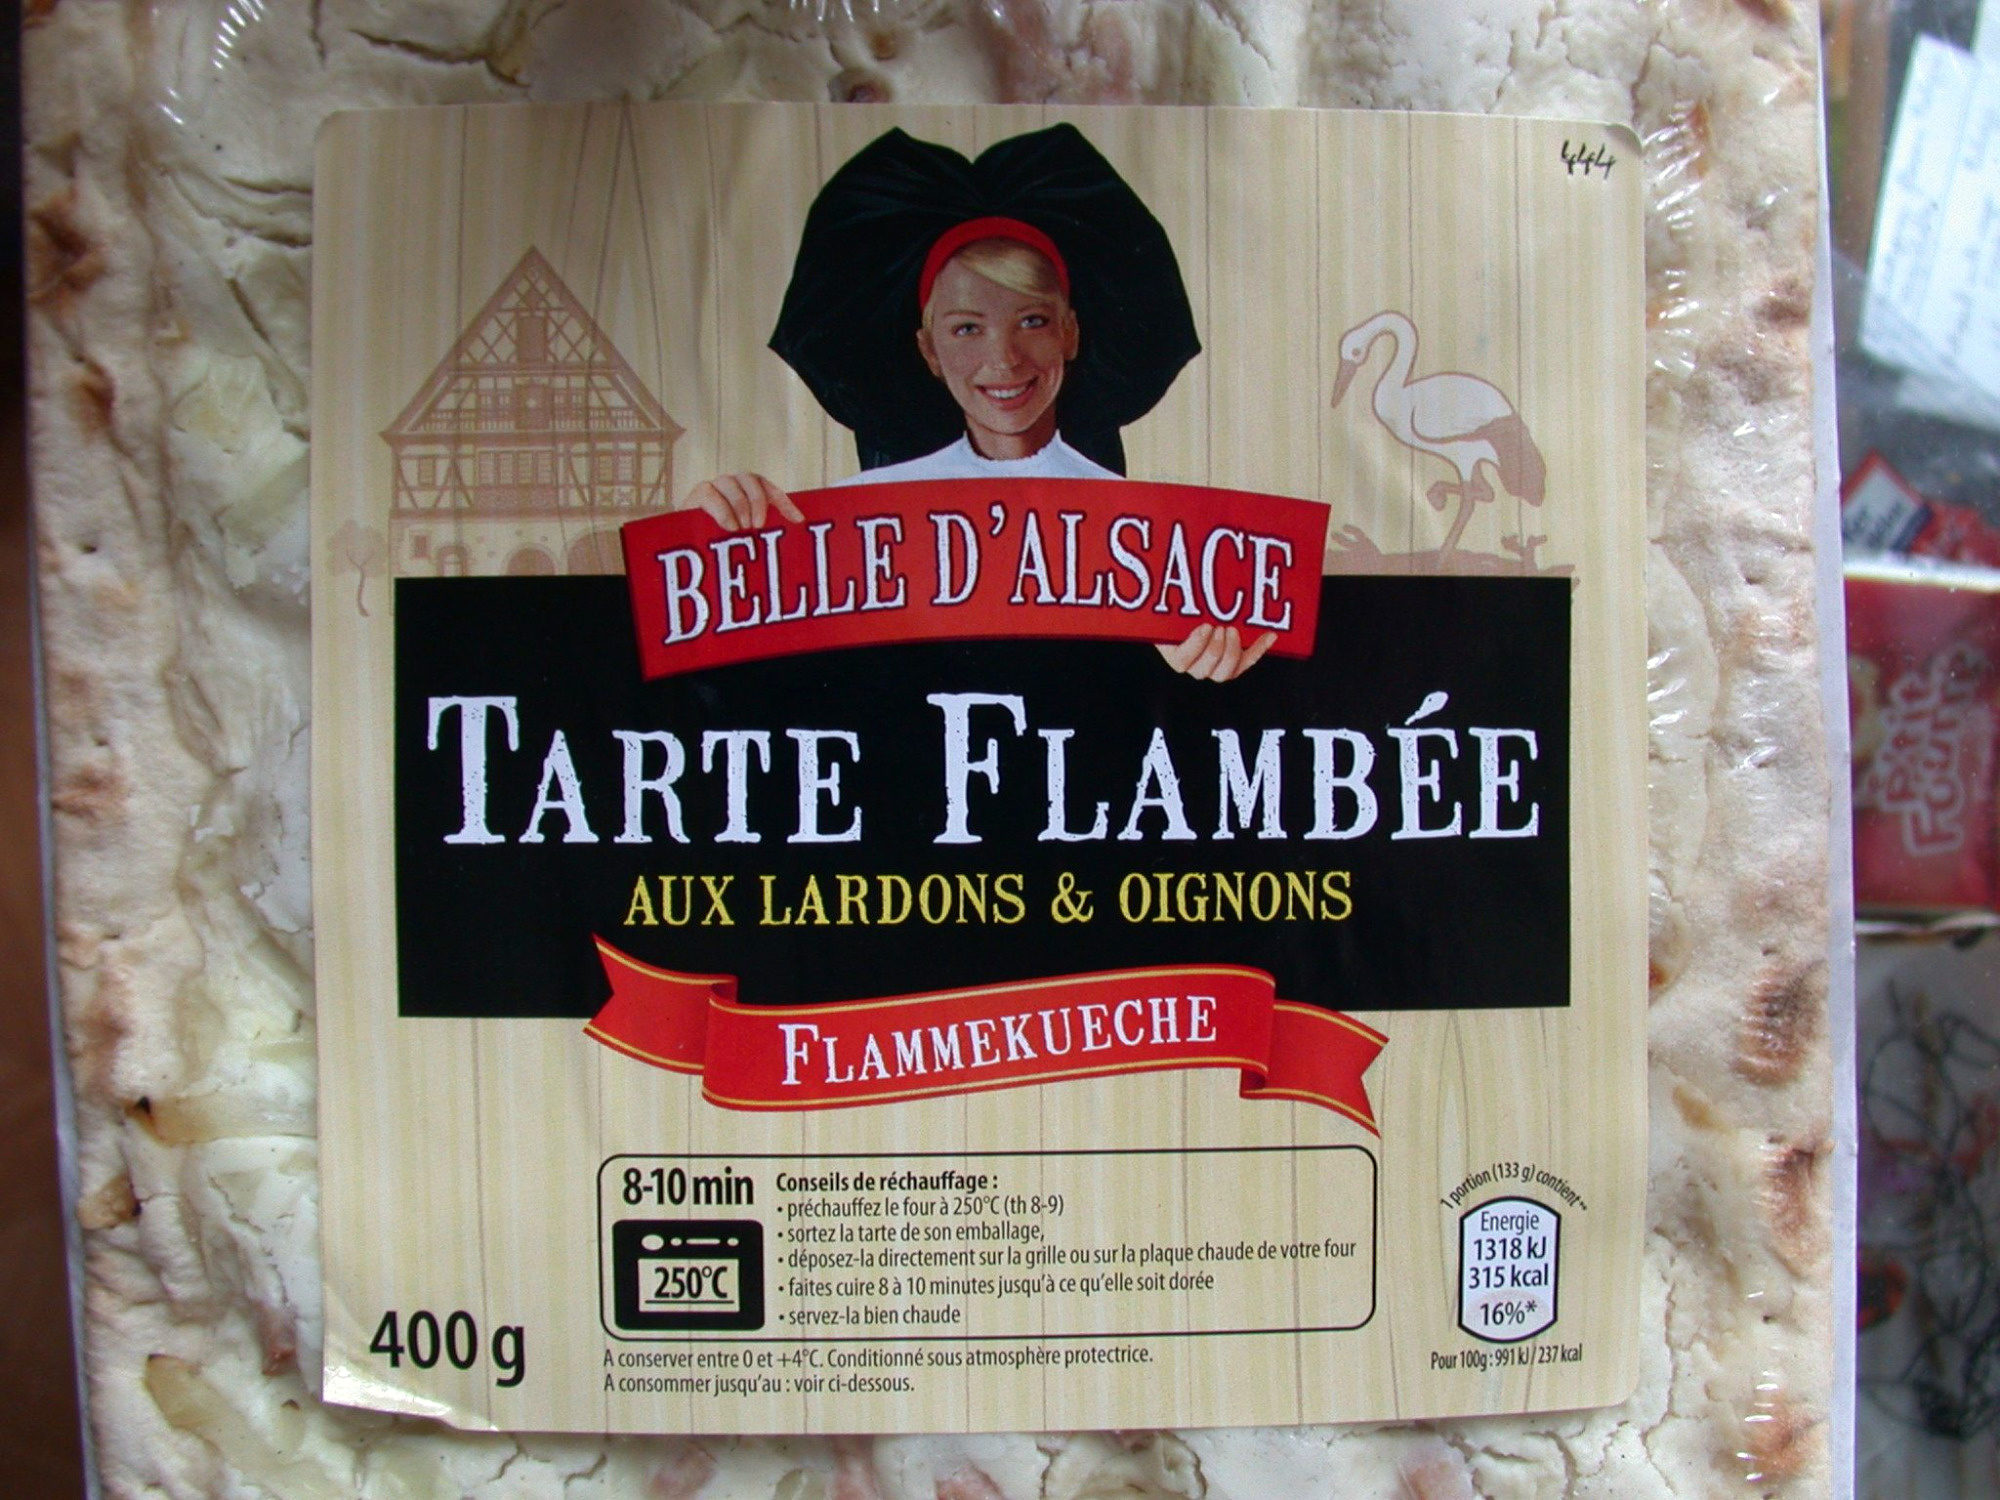 Flammekueche - Tarte flambée aux lardons et oignons - Product - fr